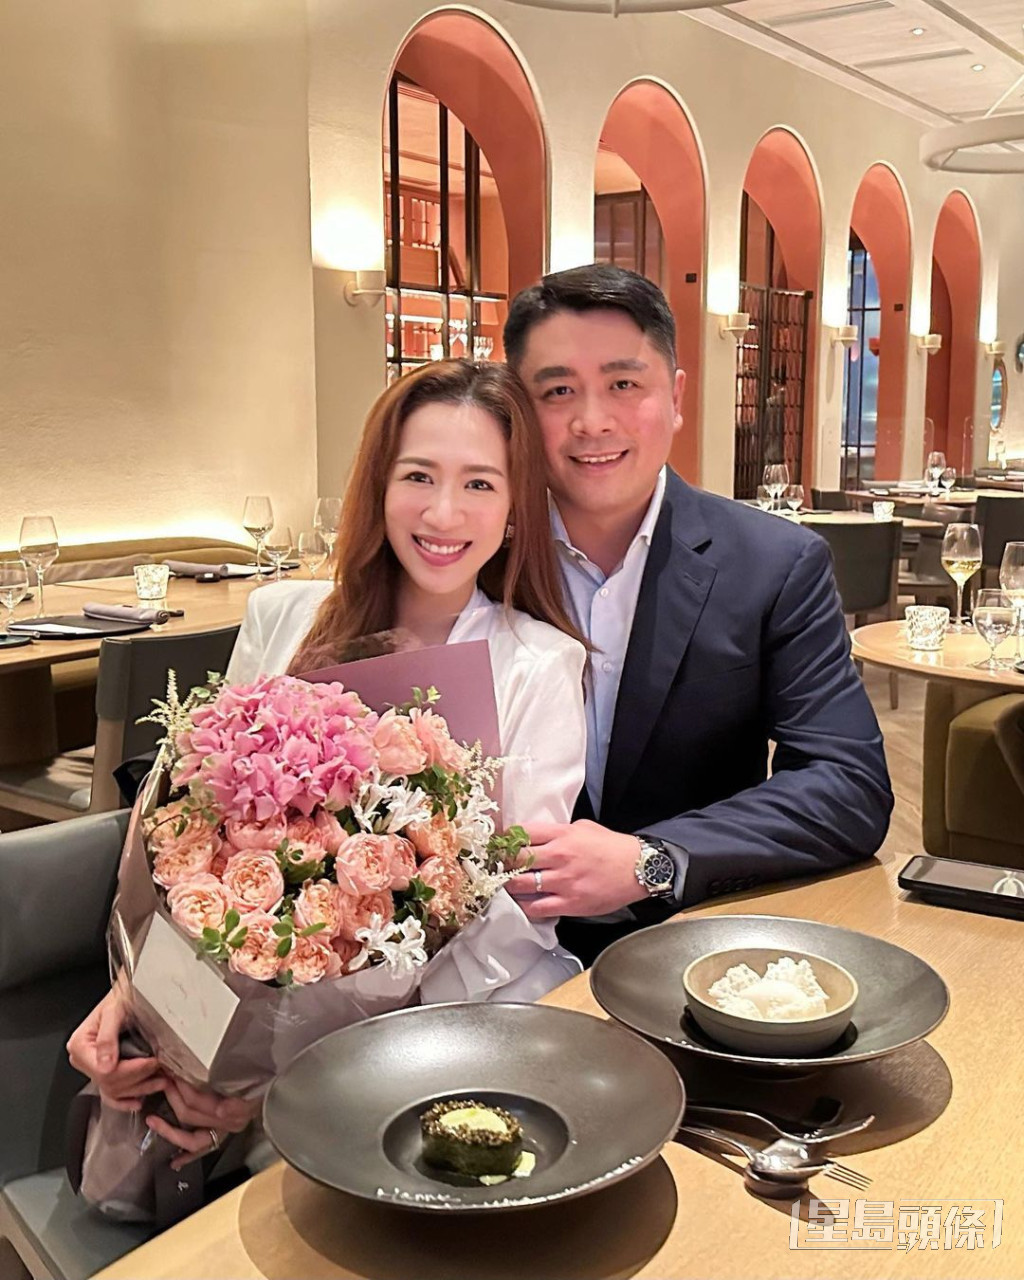 岑杏賢與丈夫慶祝結婚兩周年時的甜蜜照片。